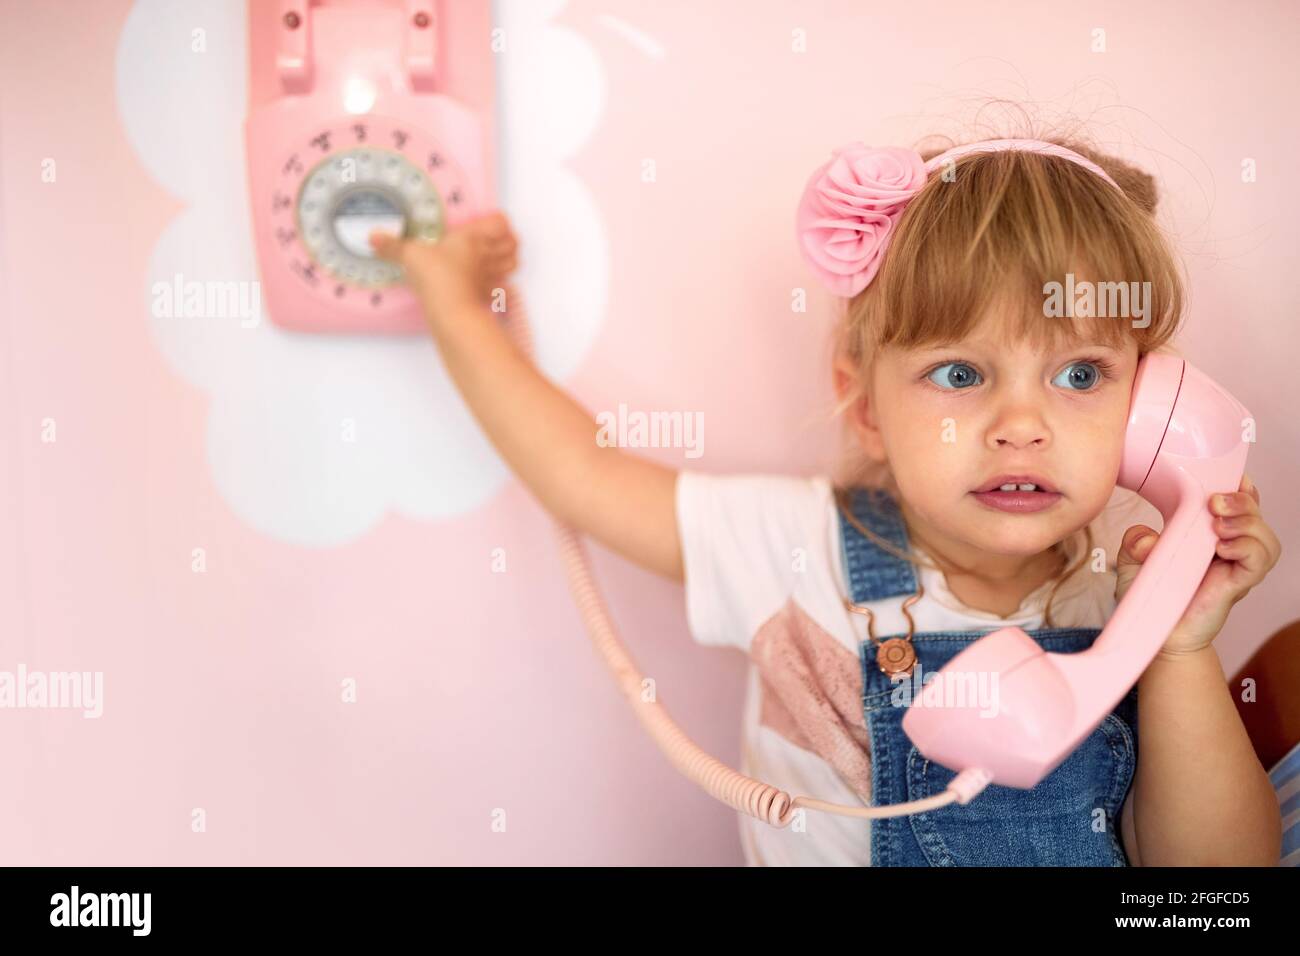 Ein kleines Mädchen spielt mit einem Retro-Telefon an der Wand einer Konditorei in einer angenehmen Atmosphäre. Konditorei, Dessert, süß Stockfoto